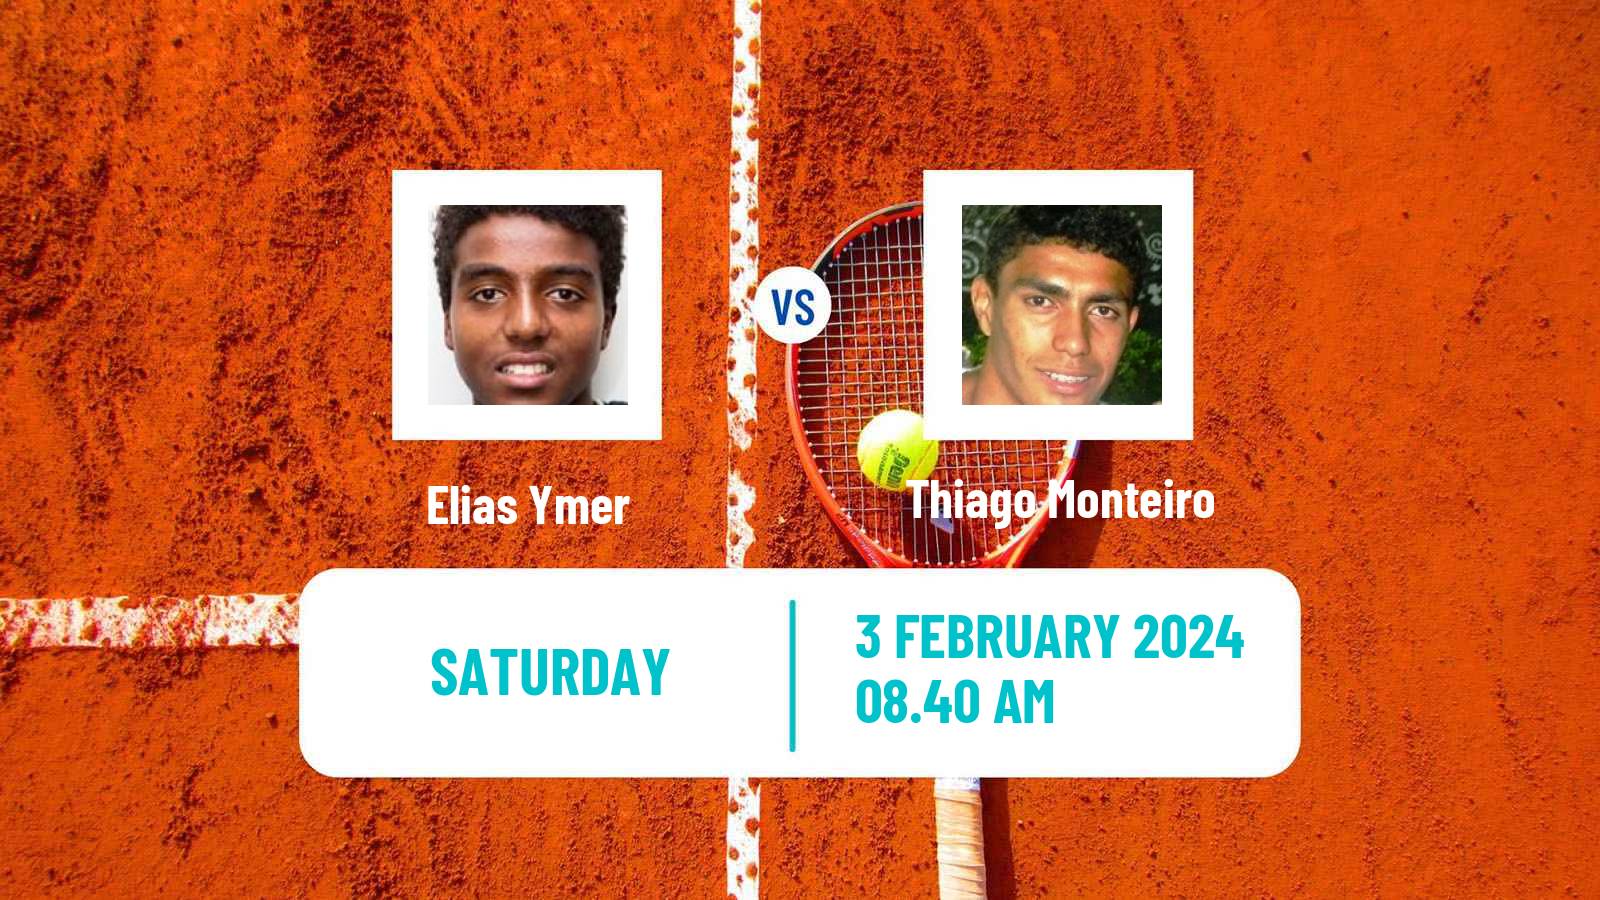 Tennis Davis Cup World Group Elias Ymer - Thiago Monteiro